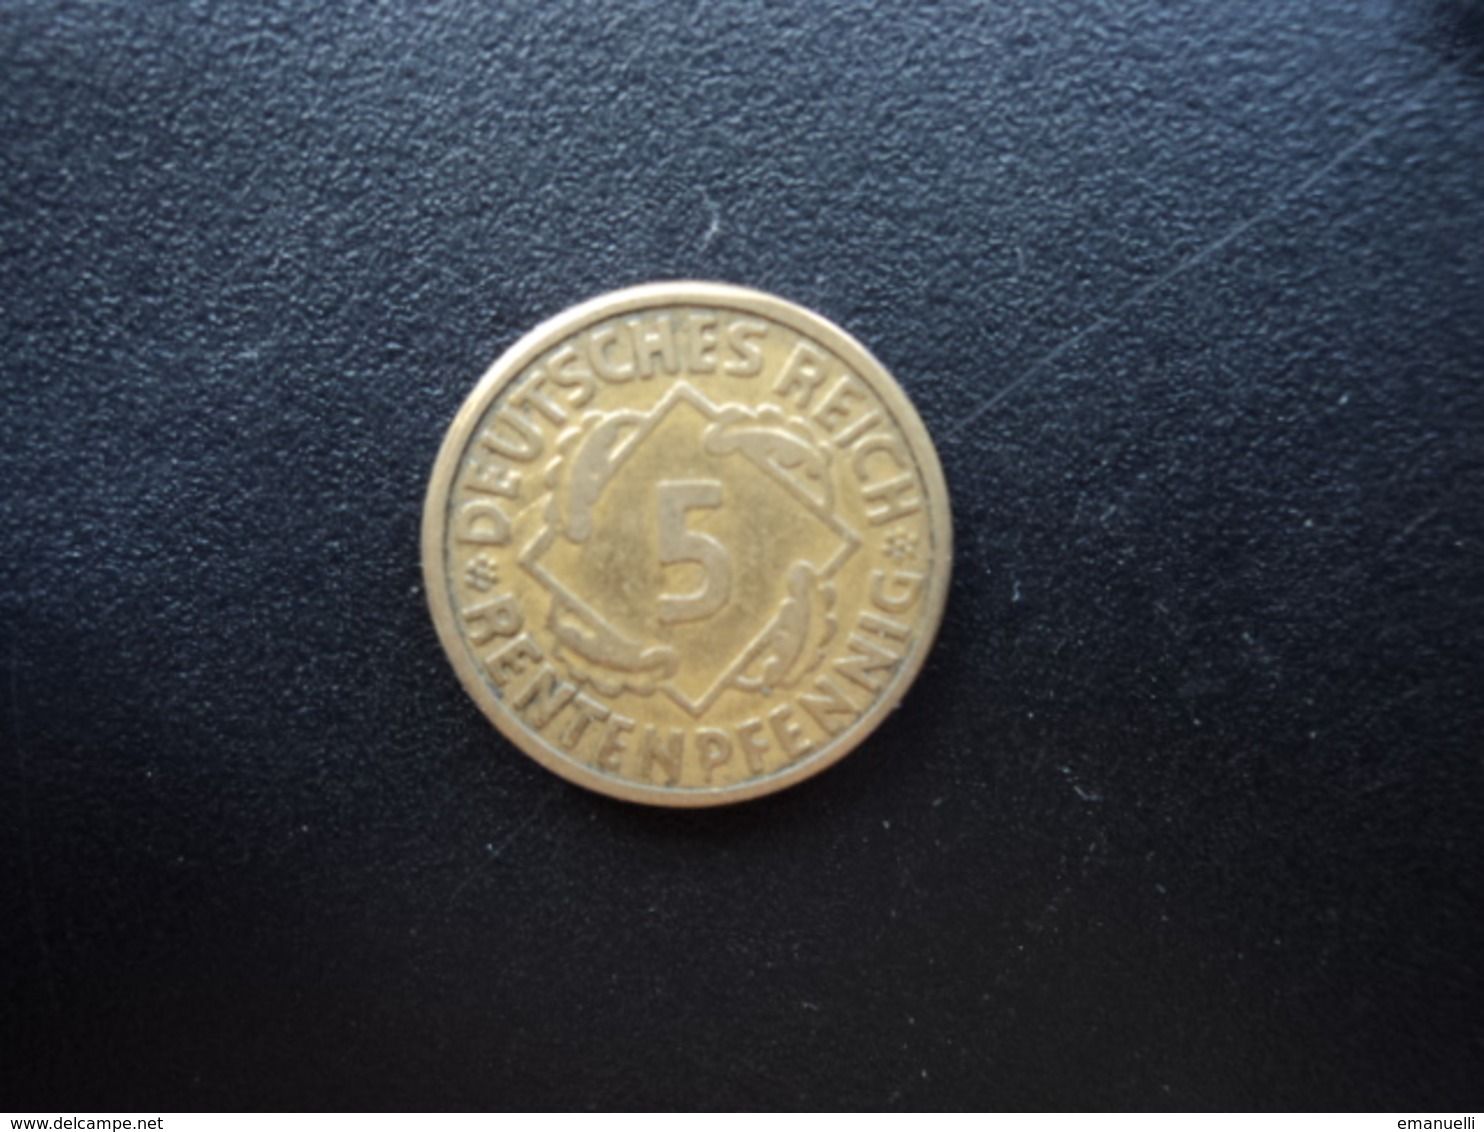 ALLEMAGNE : 5 RENTENPFENNIG  1924 G   KM 32    TTB - 5 Rentenpfennig & 5 Reichspfennig